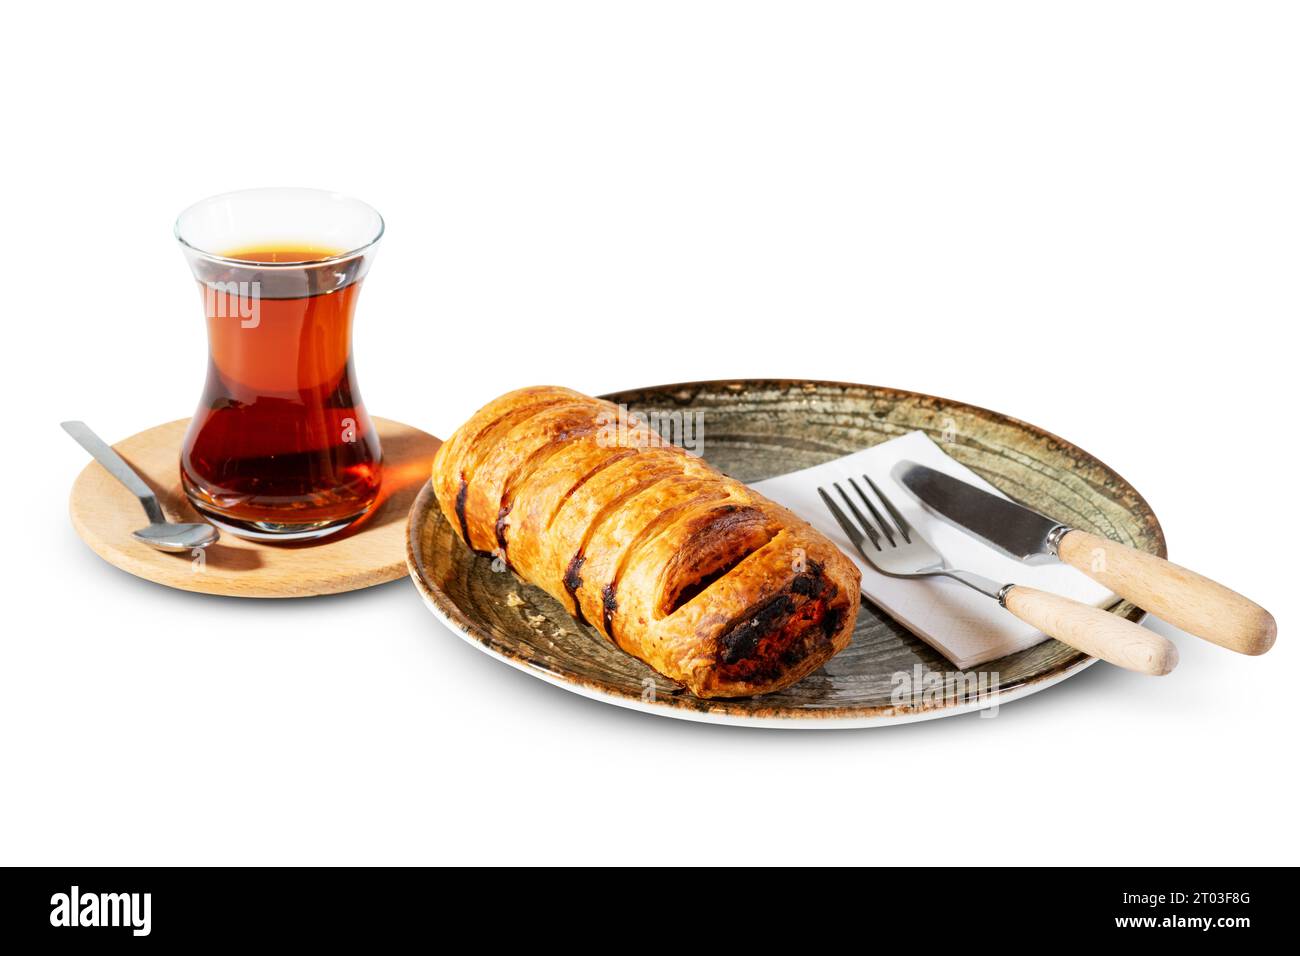 Un moment de délice turc avec une pâtisserie au sésame, accompagnée d'un verre chaleureux et accueillant de thé turc traditionnel. Découvrez l'authentique, hom Banque D'Images